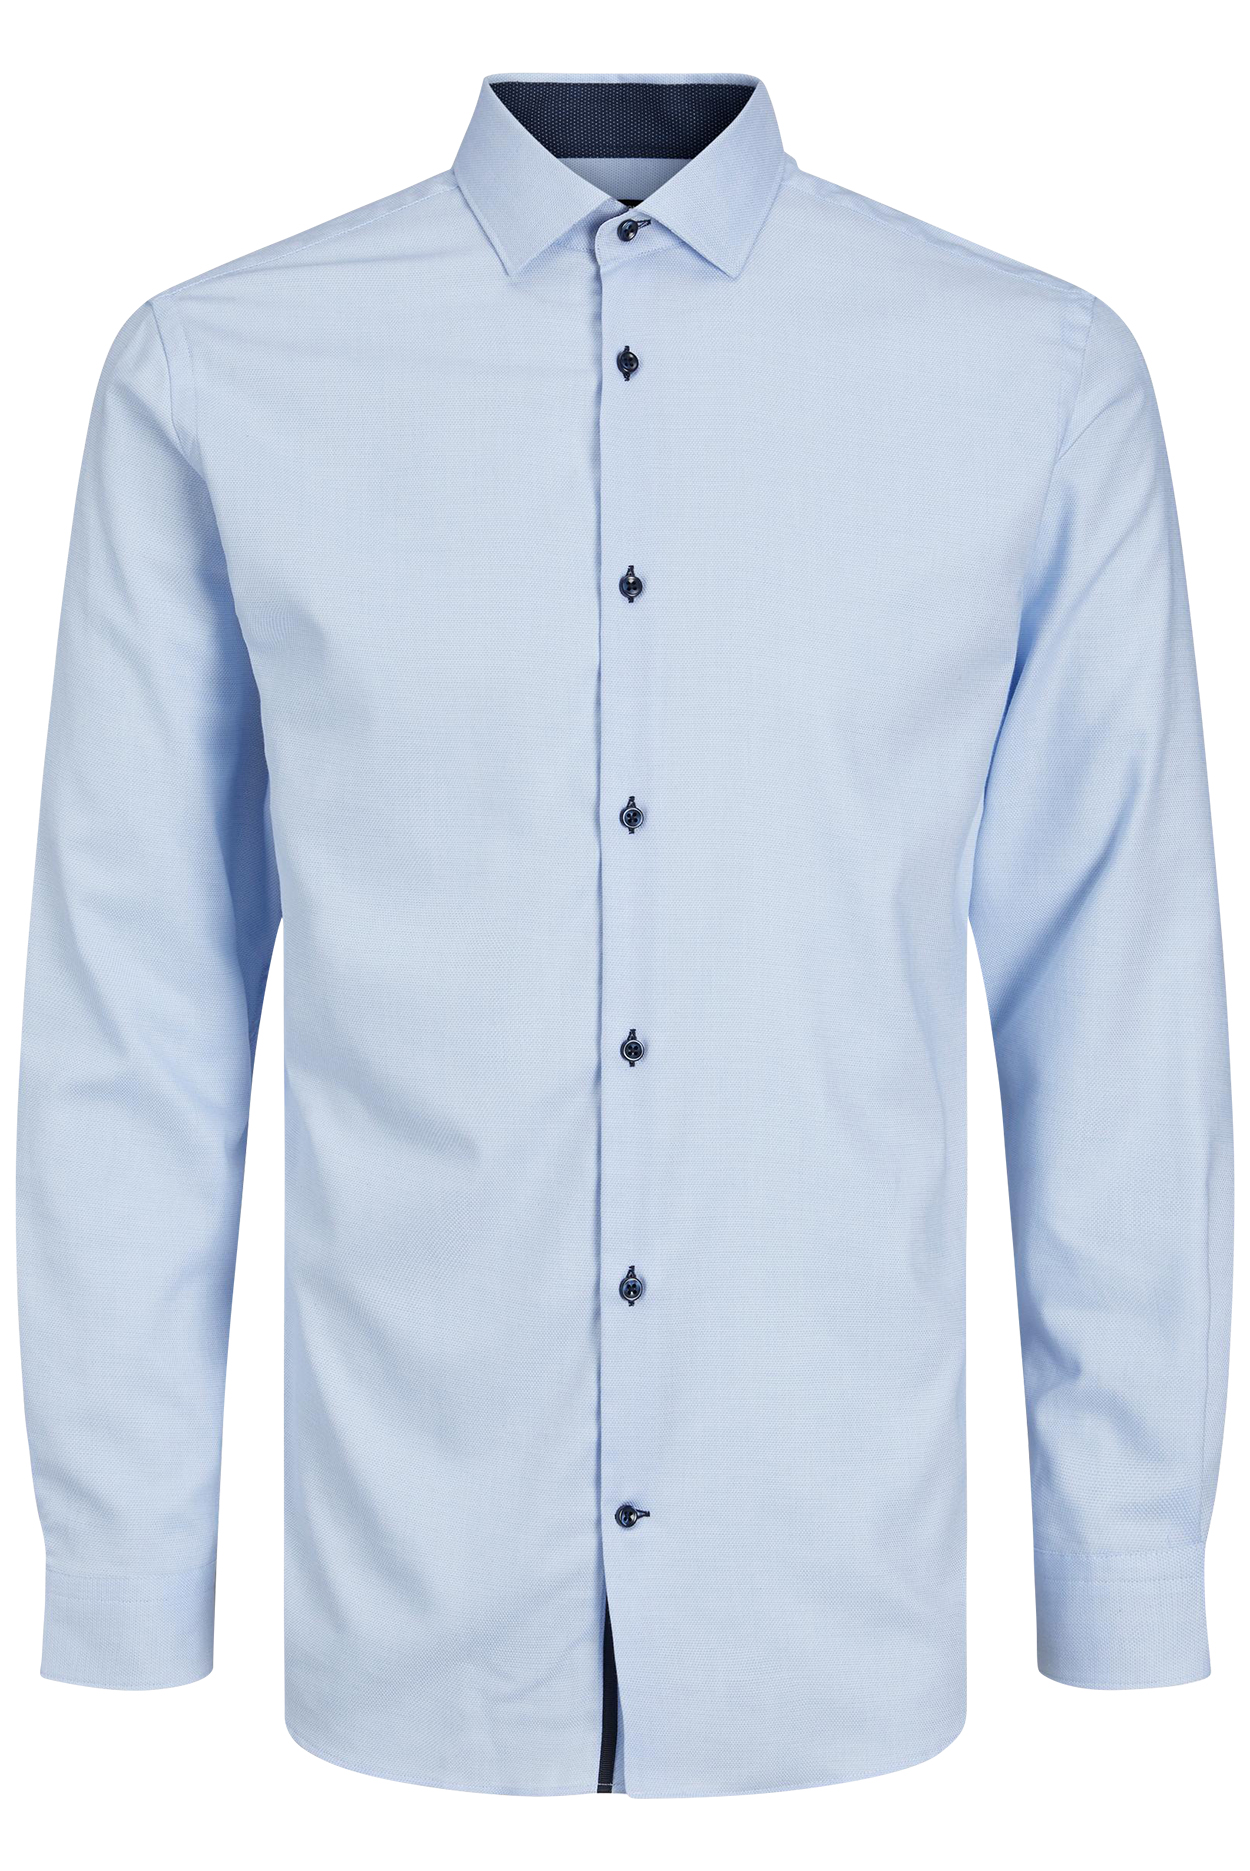 Chemise Premium en coton avec manches longues et col italien bleu ciel